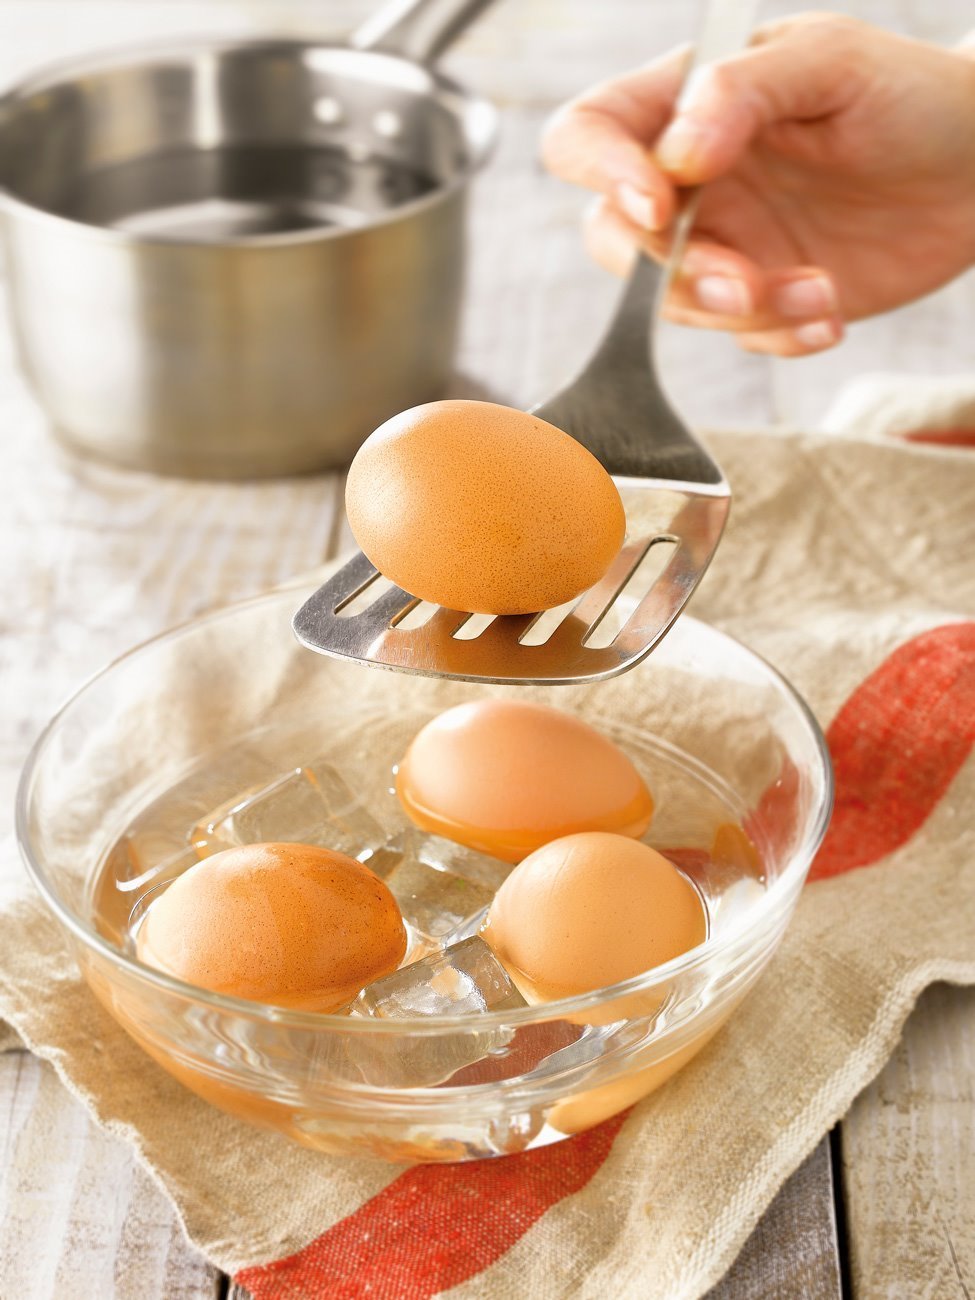 3. Cuece los huevos